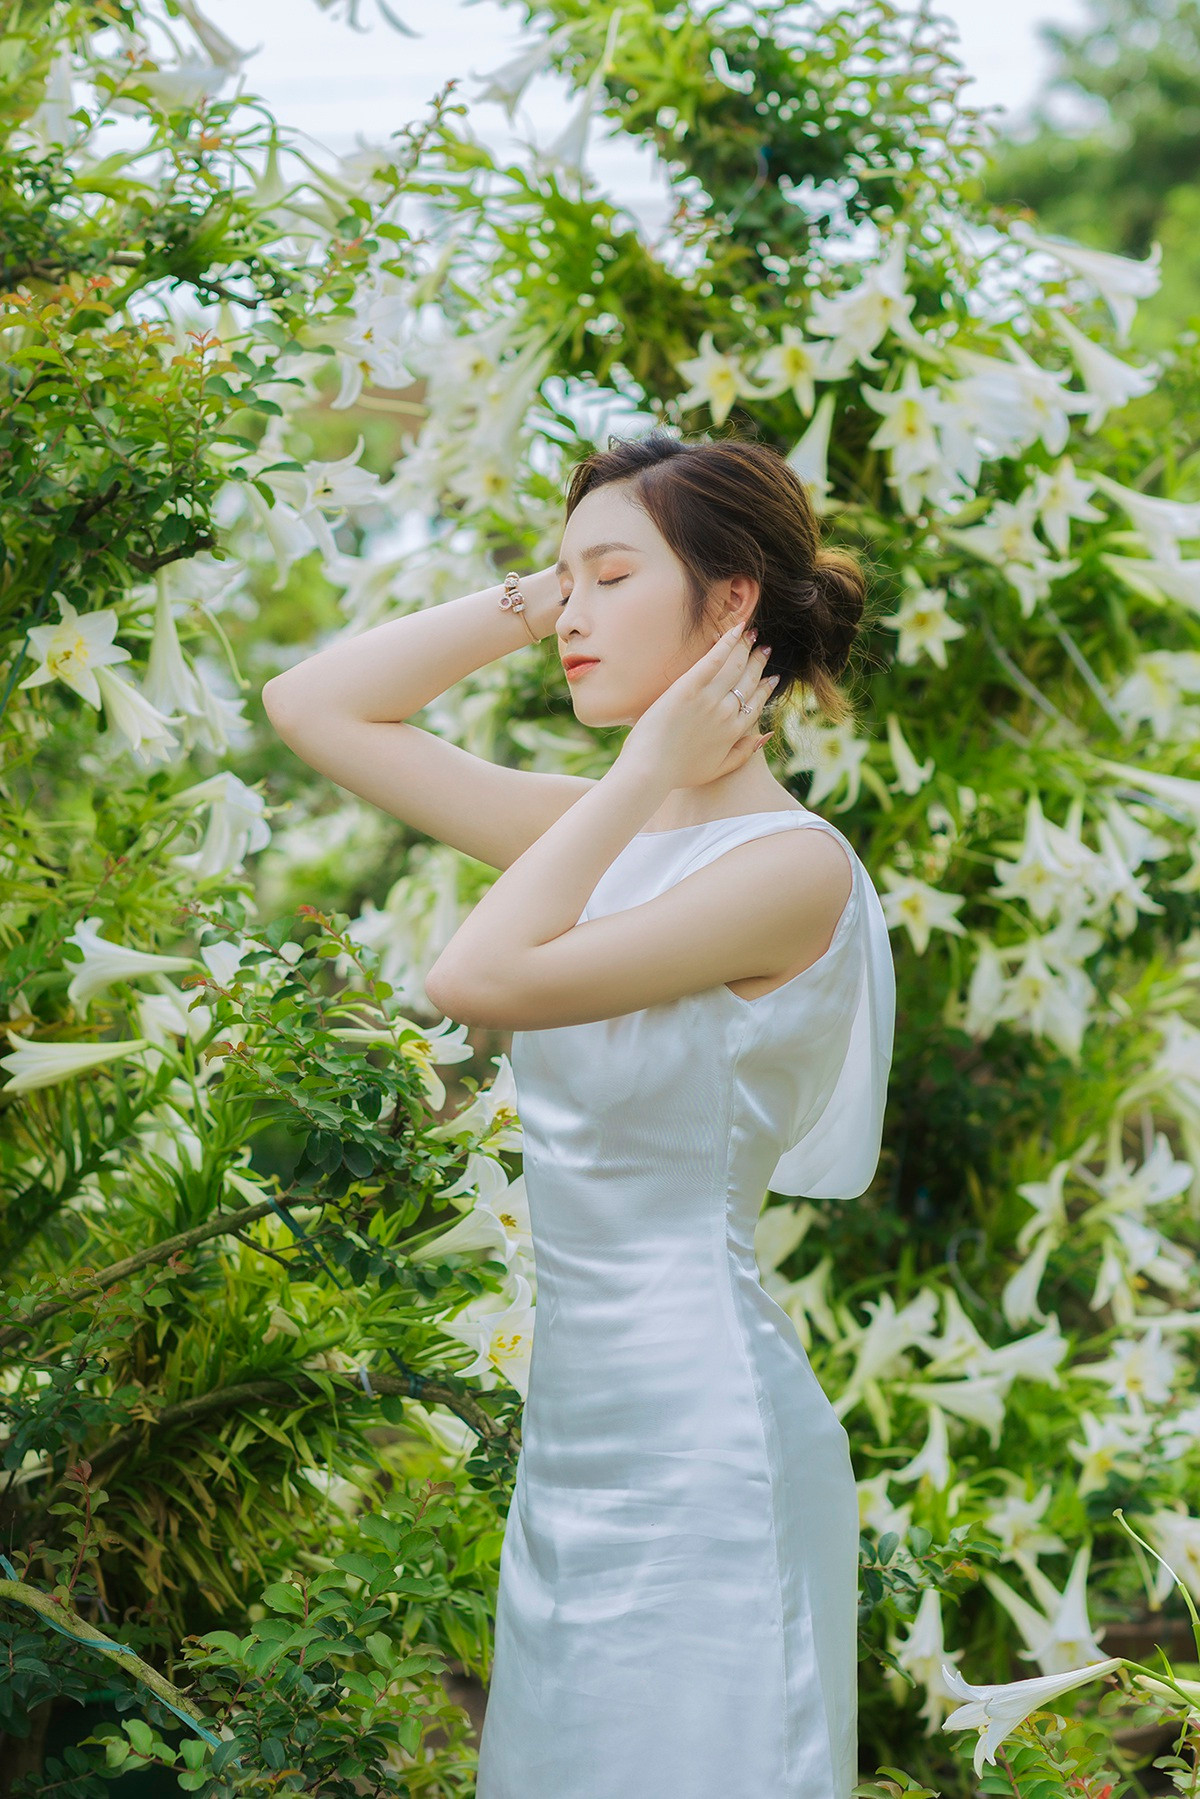 Hoa khôi ĐH Quốc gia Hà Nội khoe lưng trắng ngần giữa vườn loa kèn mùa hạ - 11